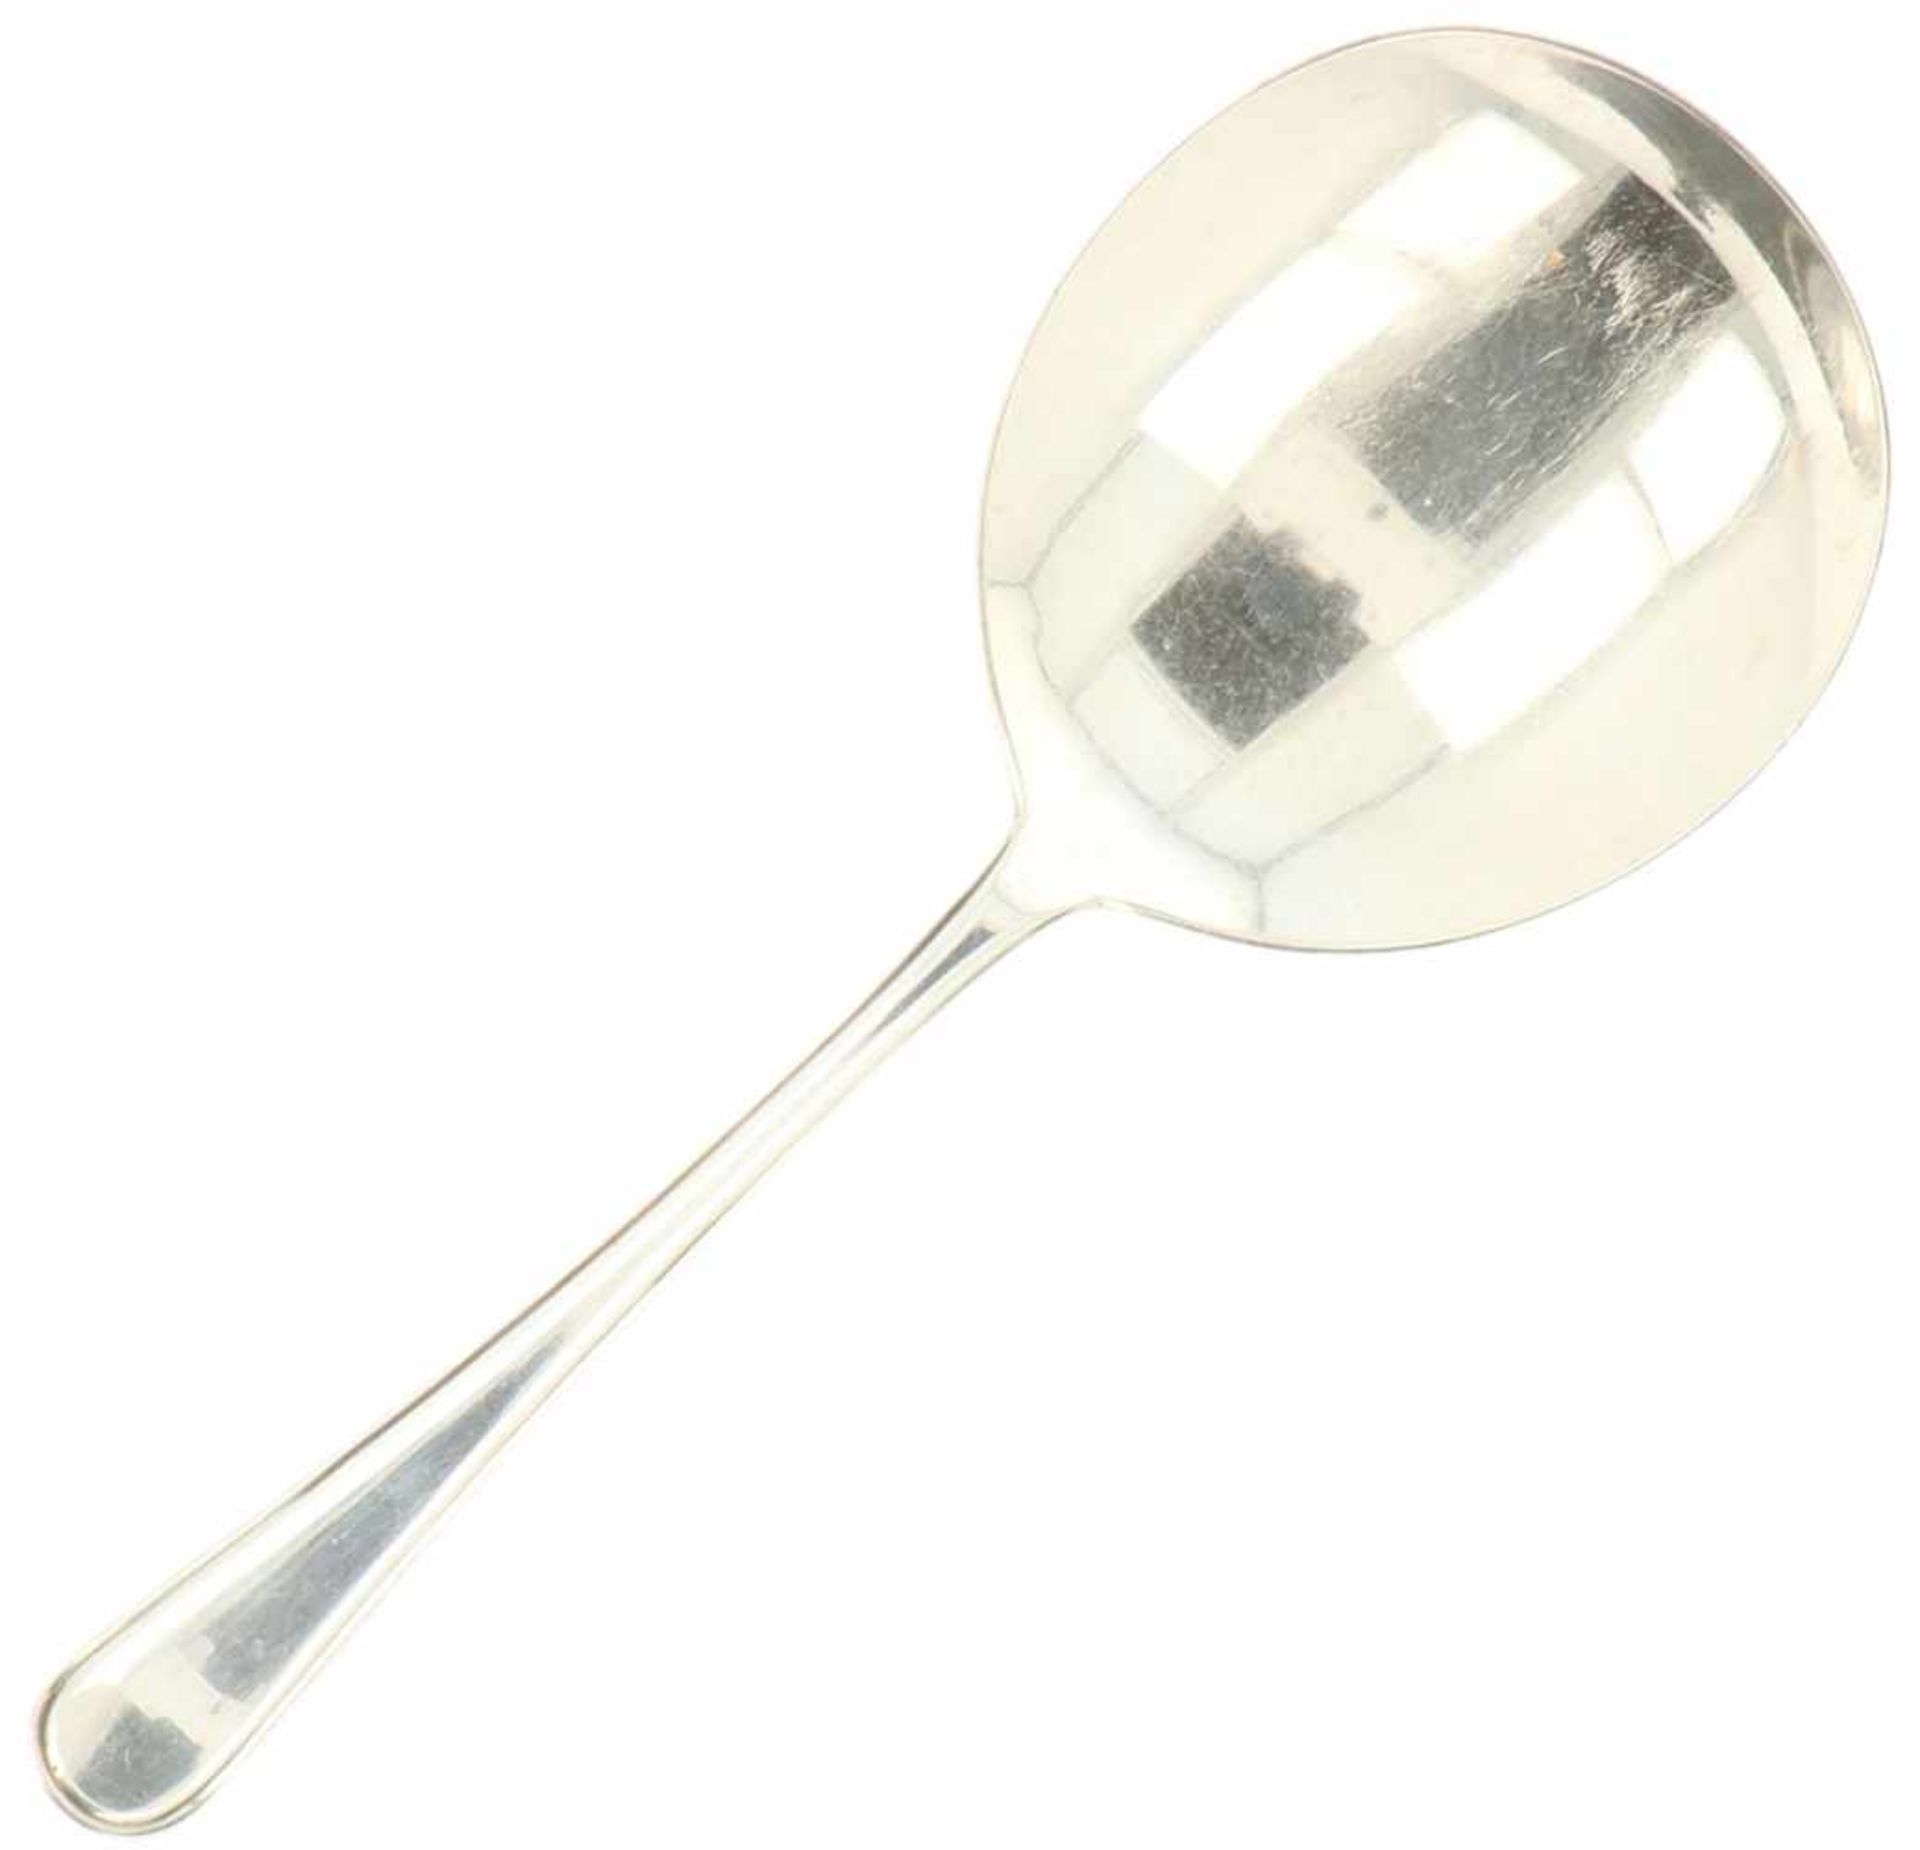 Silver porridge spoon.